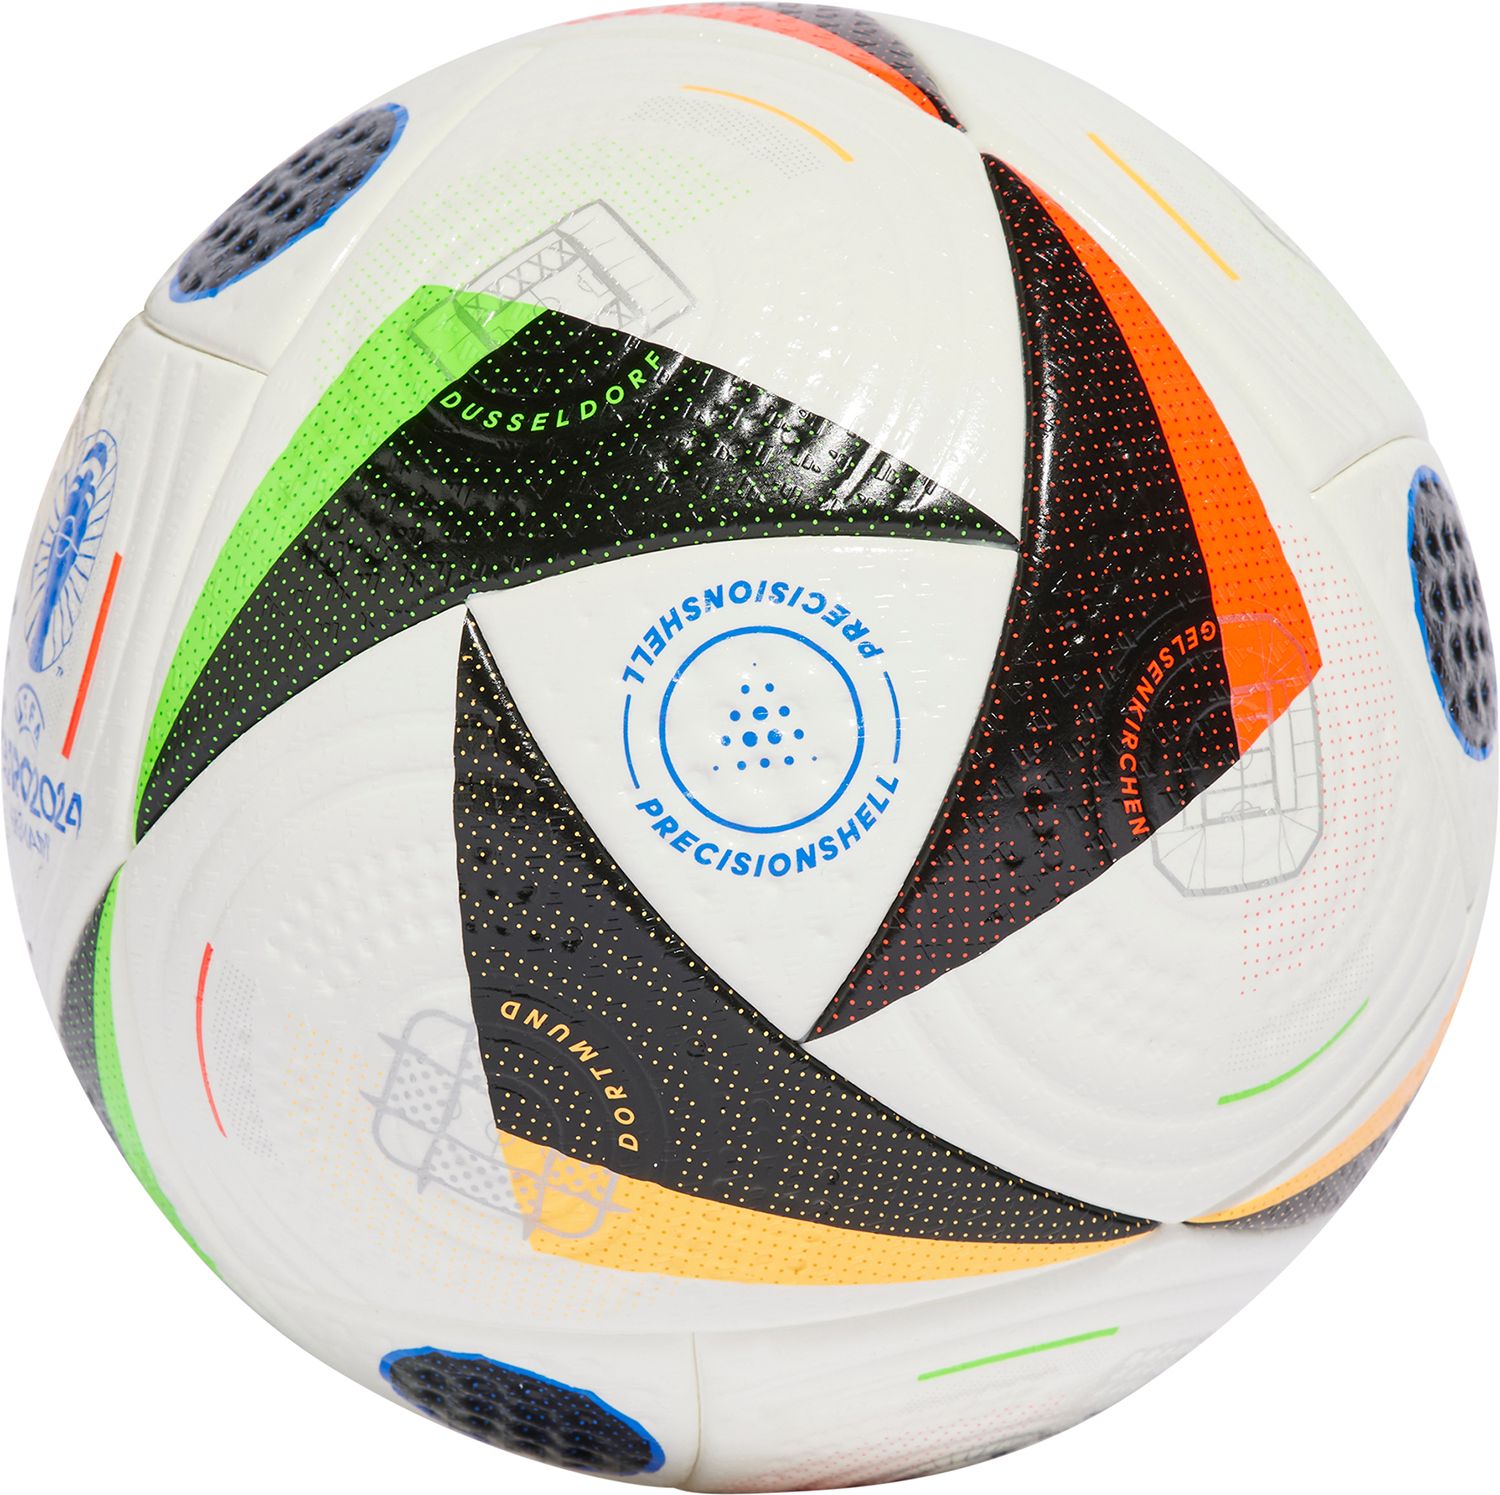 Adidas Euro 2024 Pro Official Match Ball - SoccerWorld